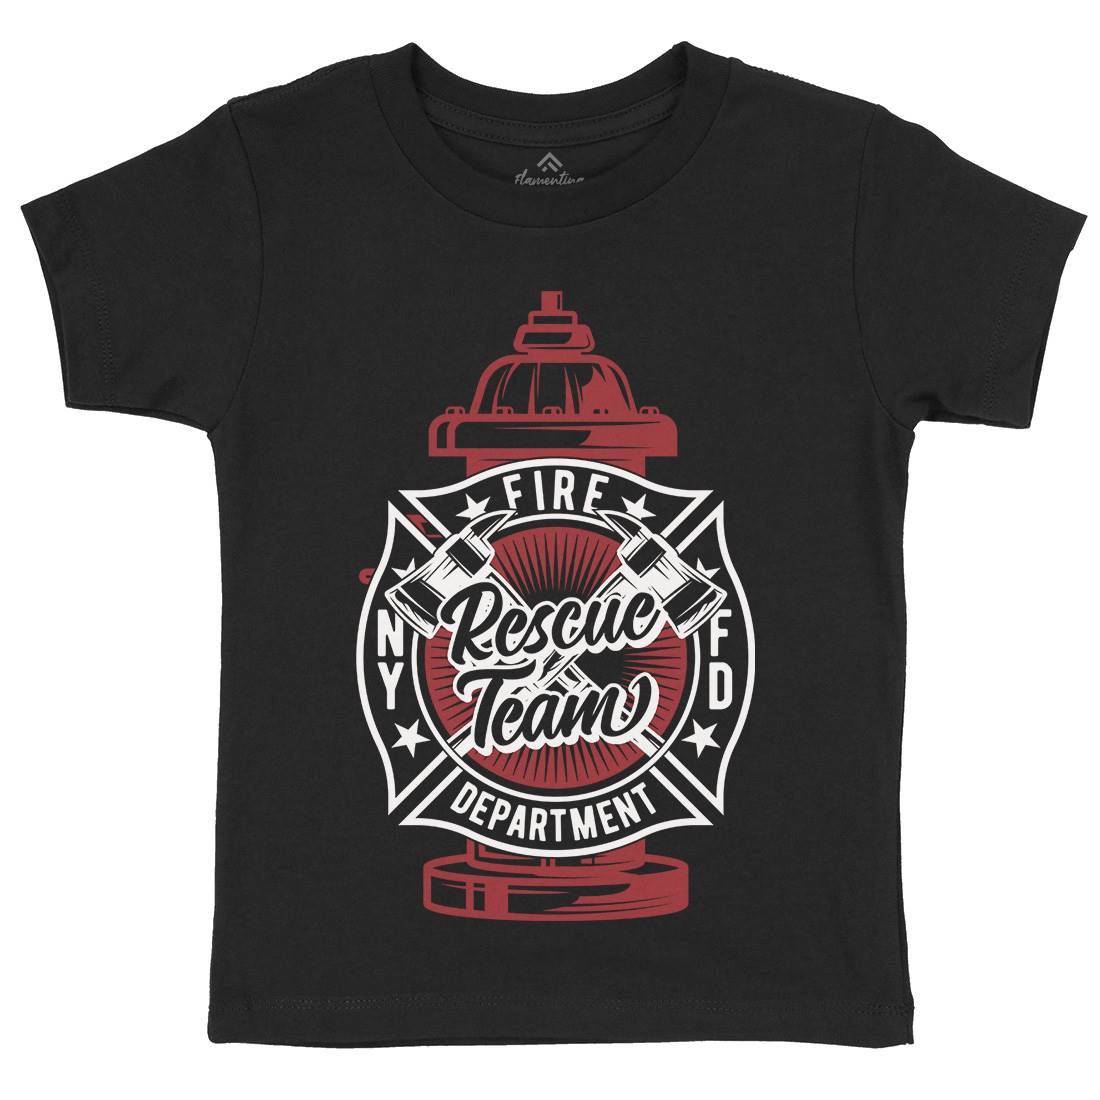 Fire Fighter Kids Organic Crew Neck T-Shirt Firefighters B817